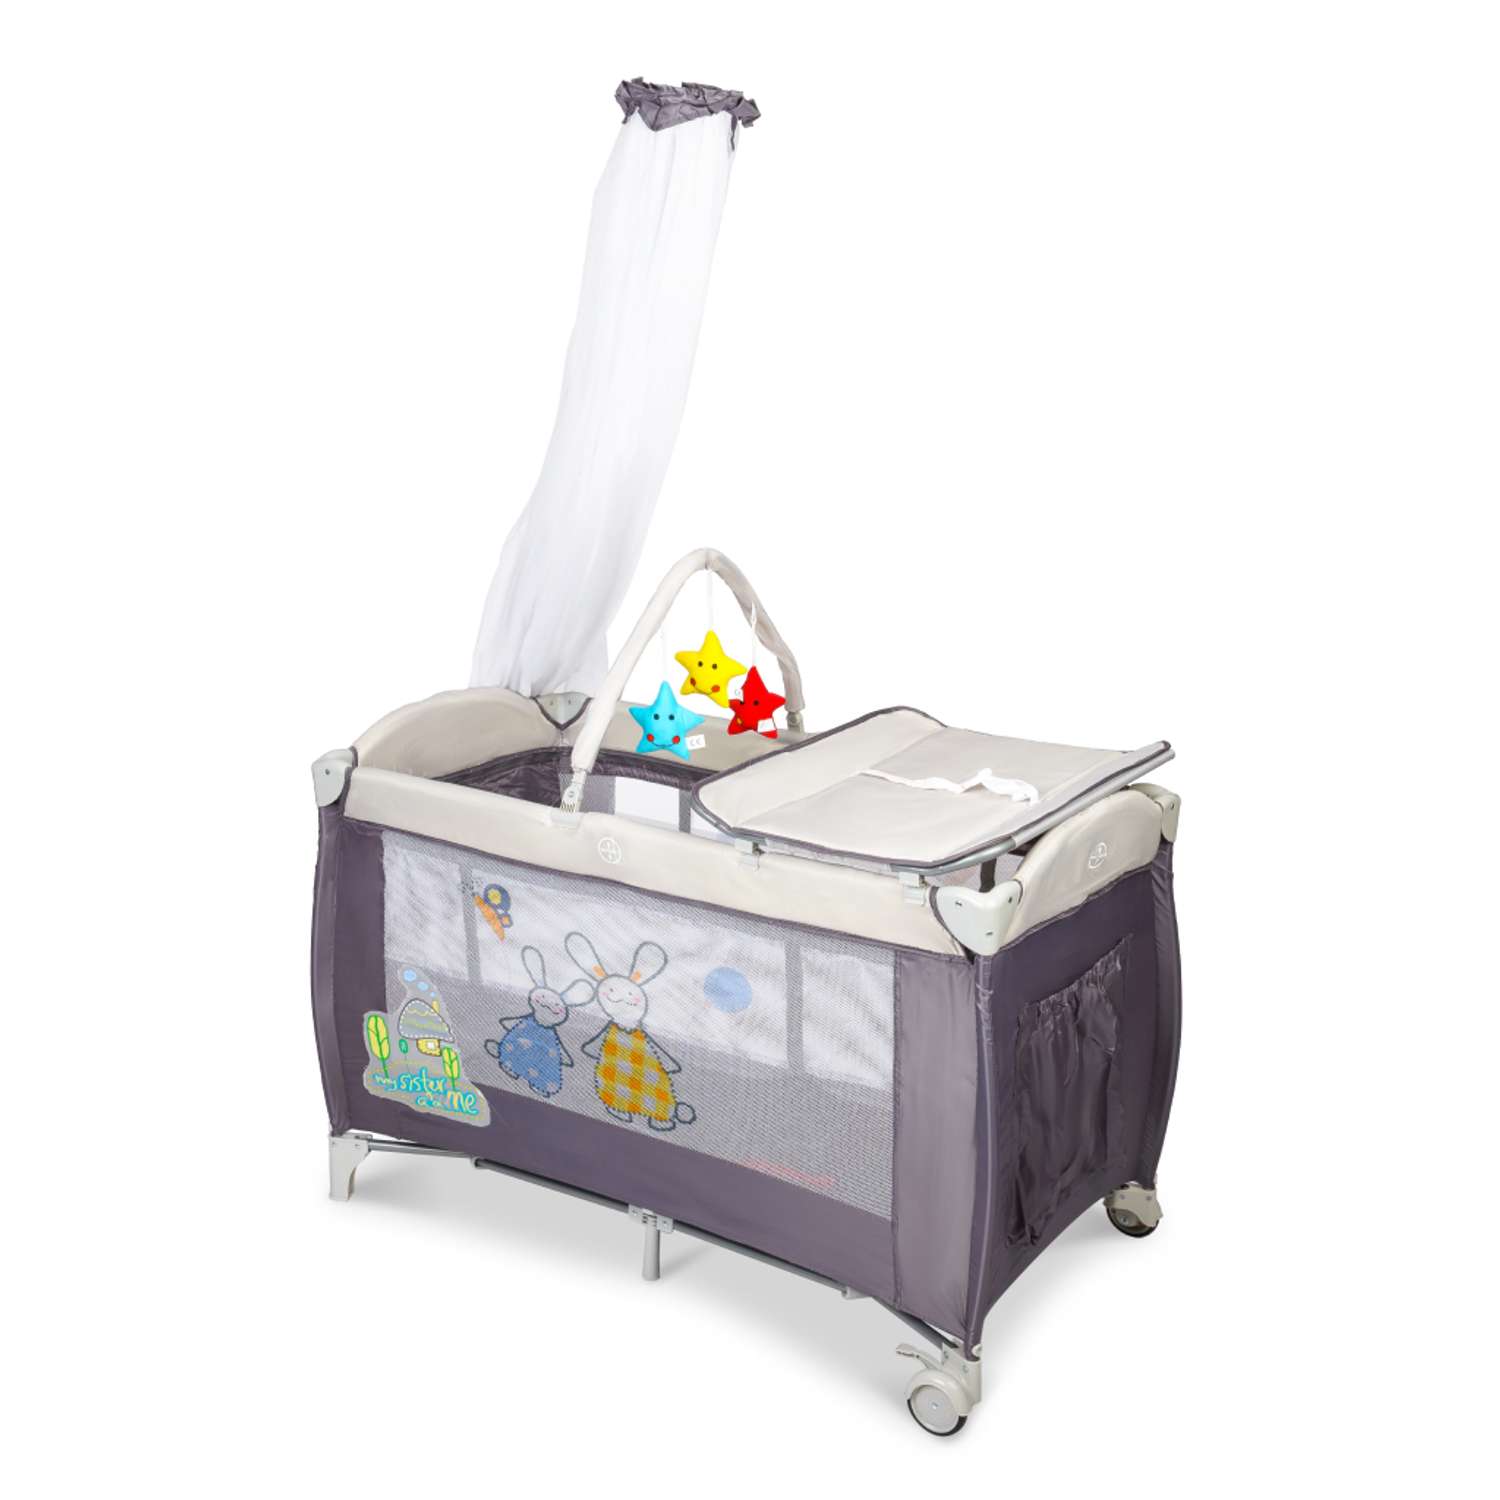 Складной детский манеж-кровать Solmax с мягким матрасом на колесиках серый HW00932 HW00932 - фото 1